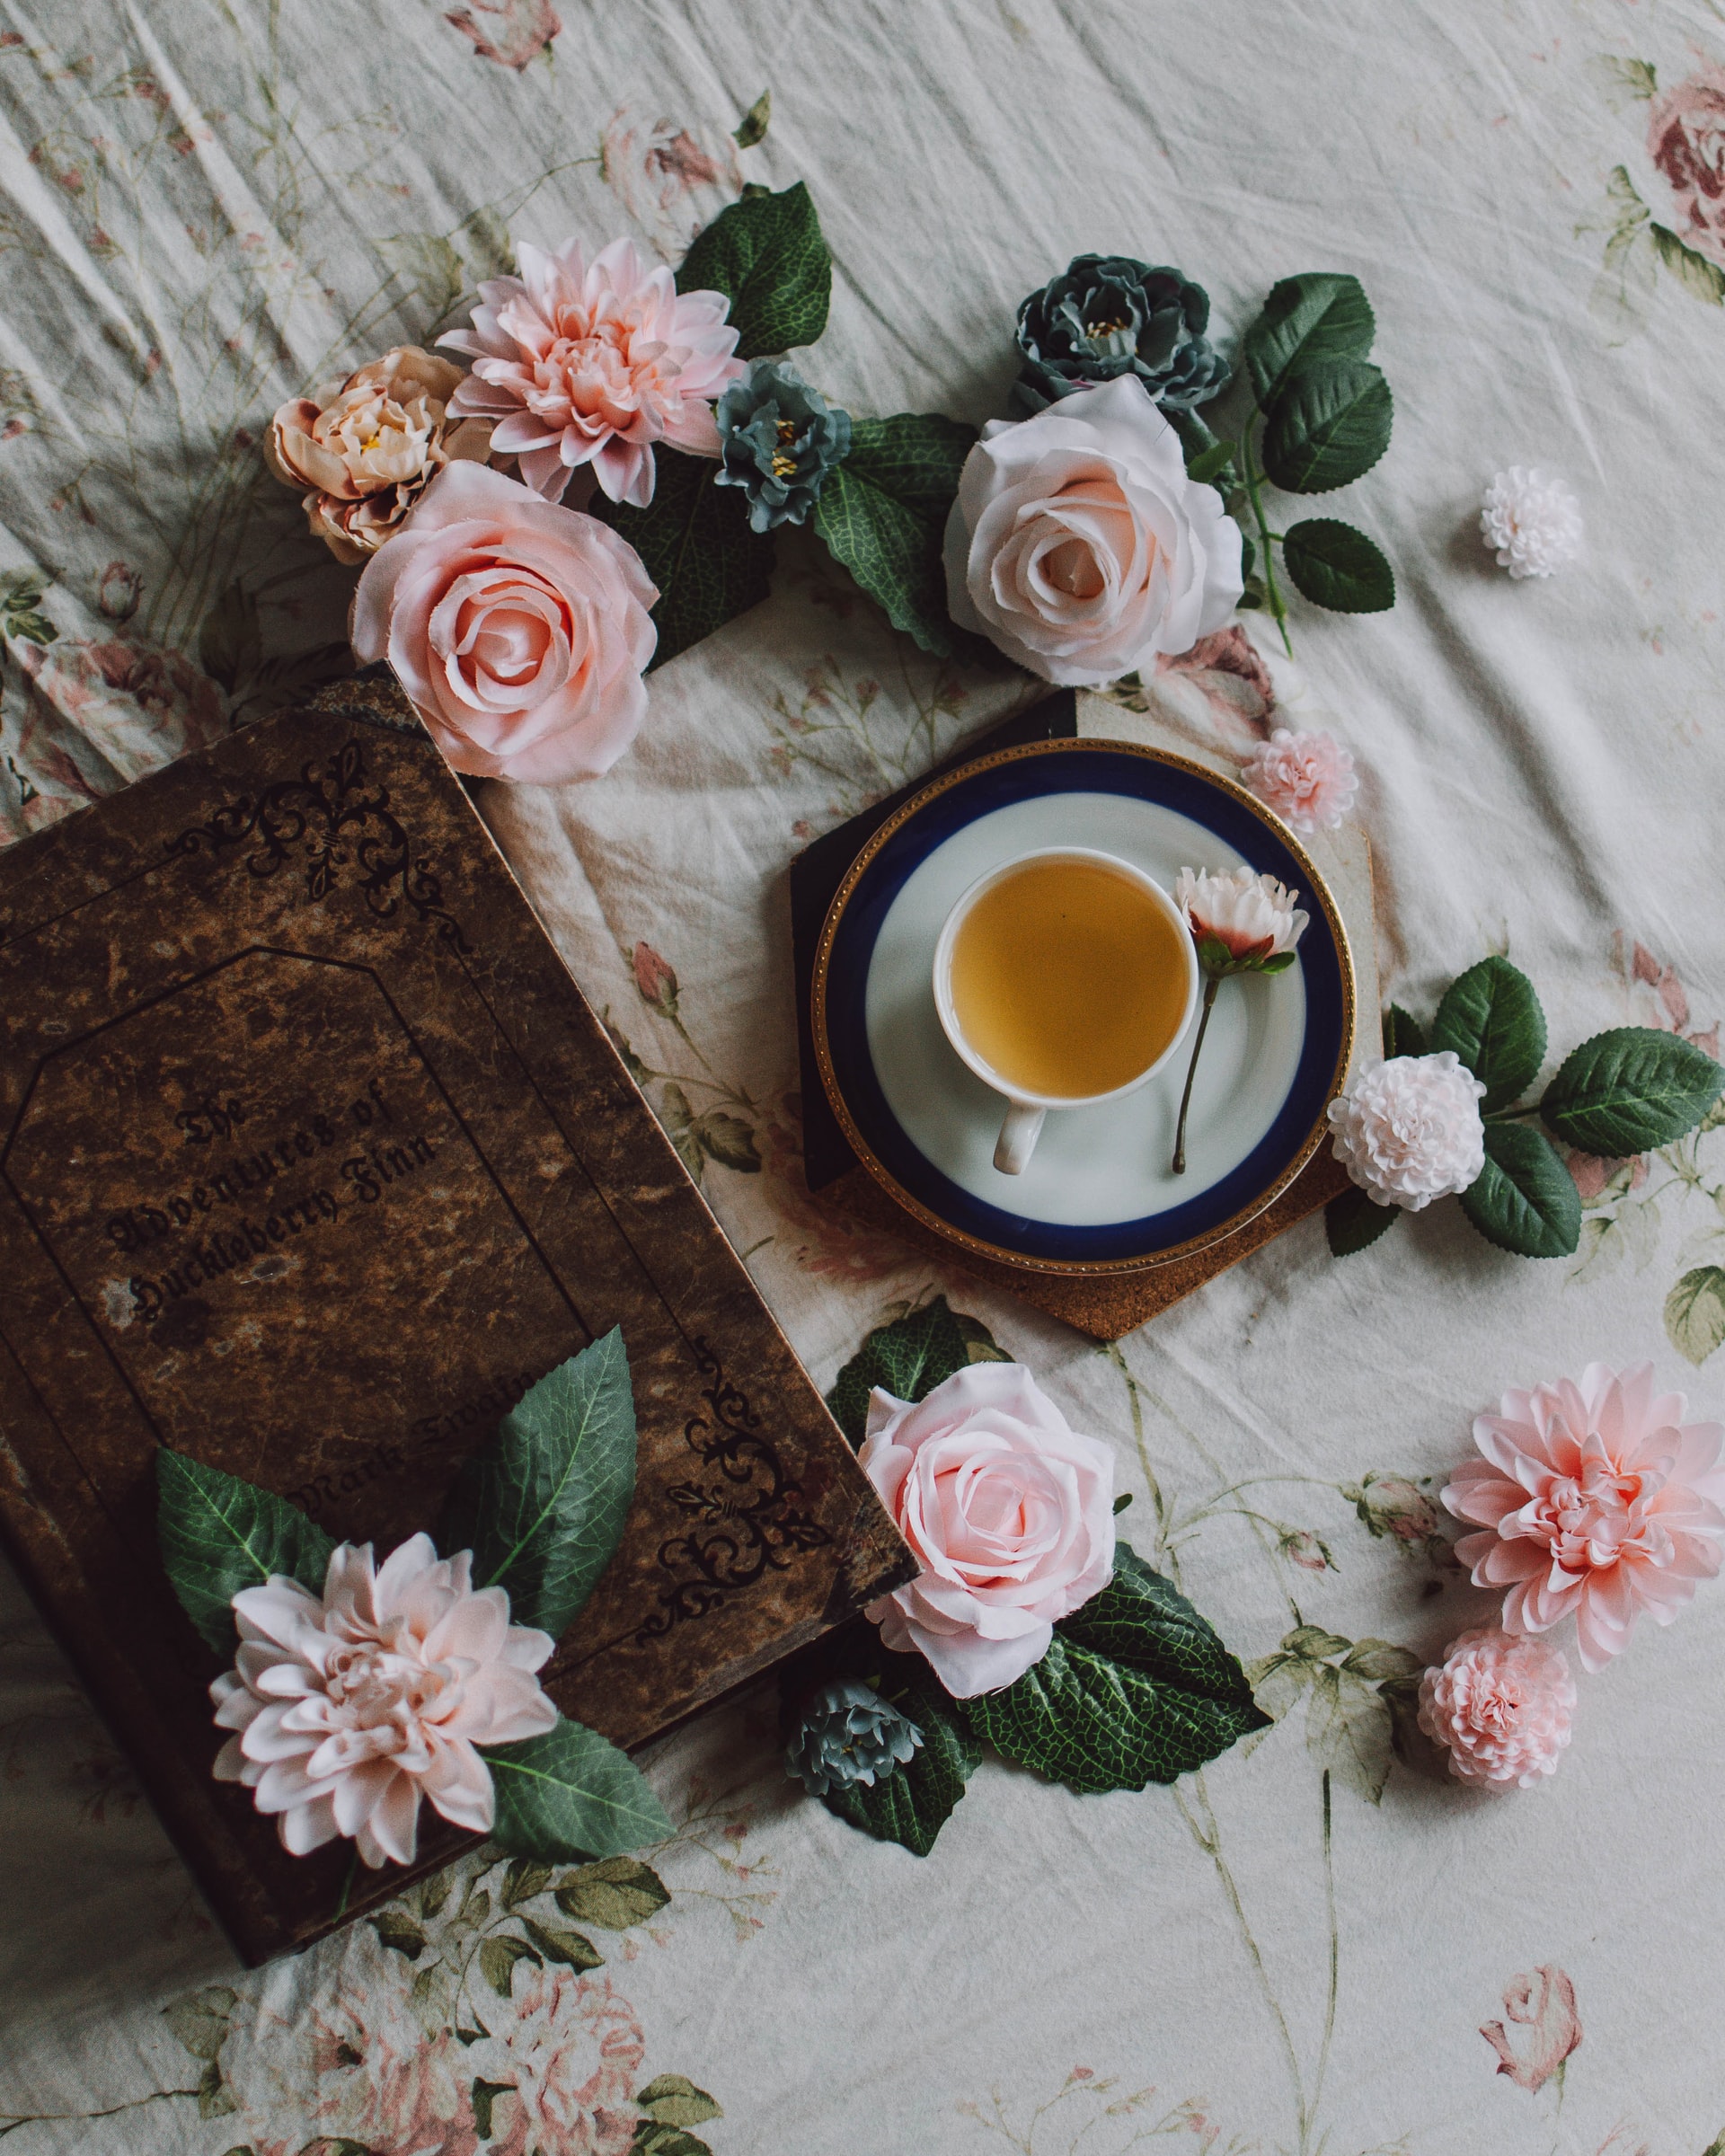 šálka čaju na stole s ružami